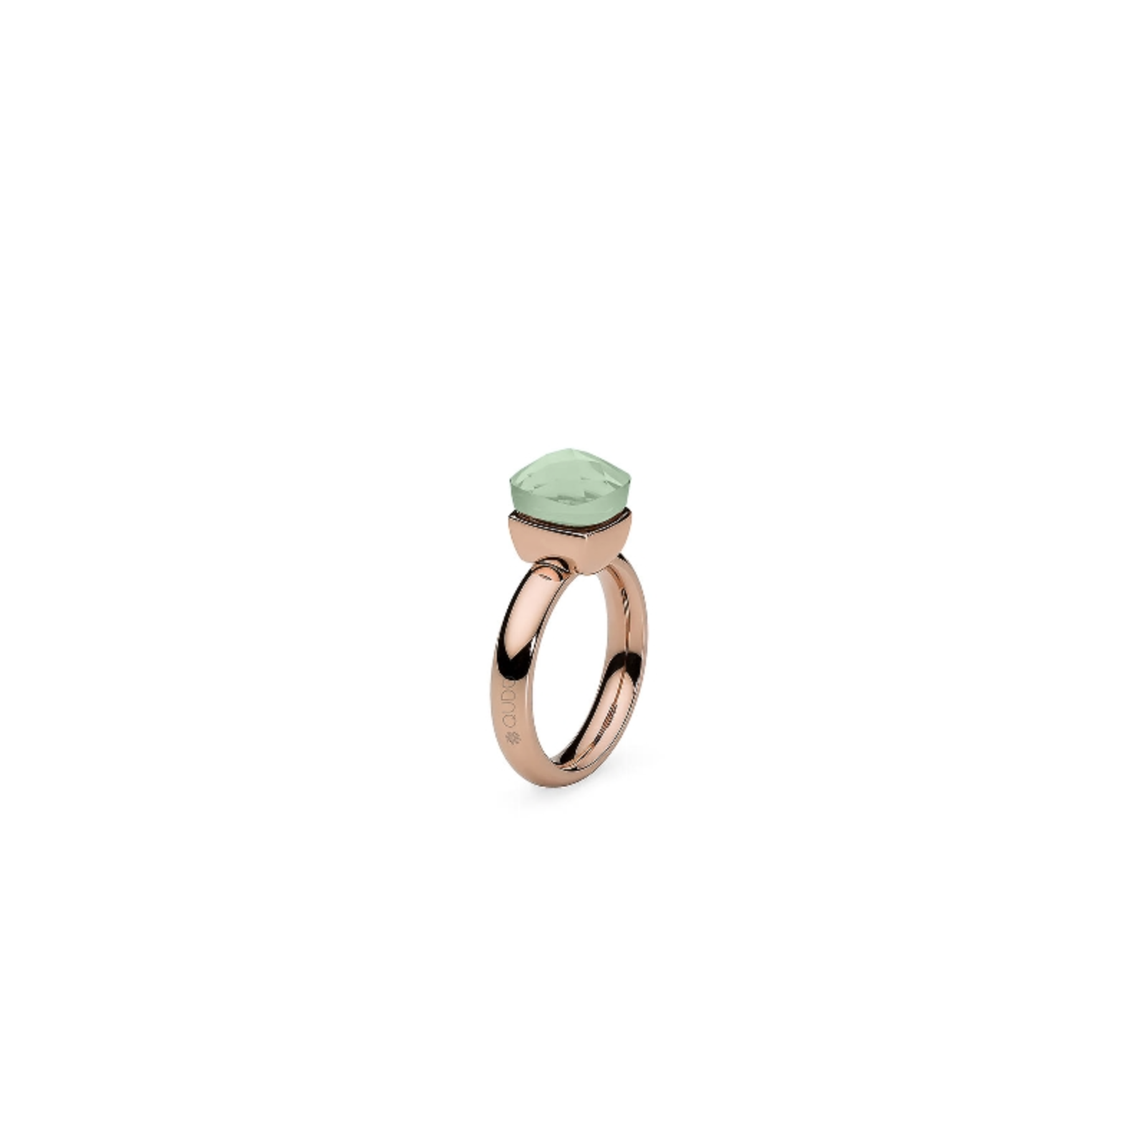 Dies ist ein Ring der Marke Qudo, Modell Firenze. Er hat eine Farbkombination aus Chrysolite und Roségold. Der Ring strahlt Eleganz und Klasse aus und ist ideal für besondere Anlässe oder als alltägliches Accessoire.